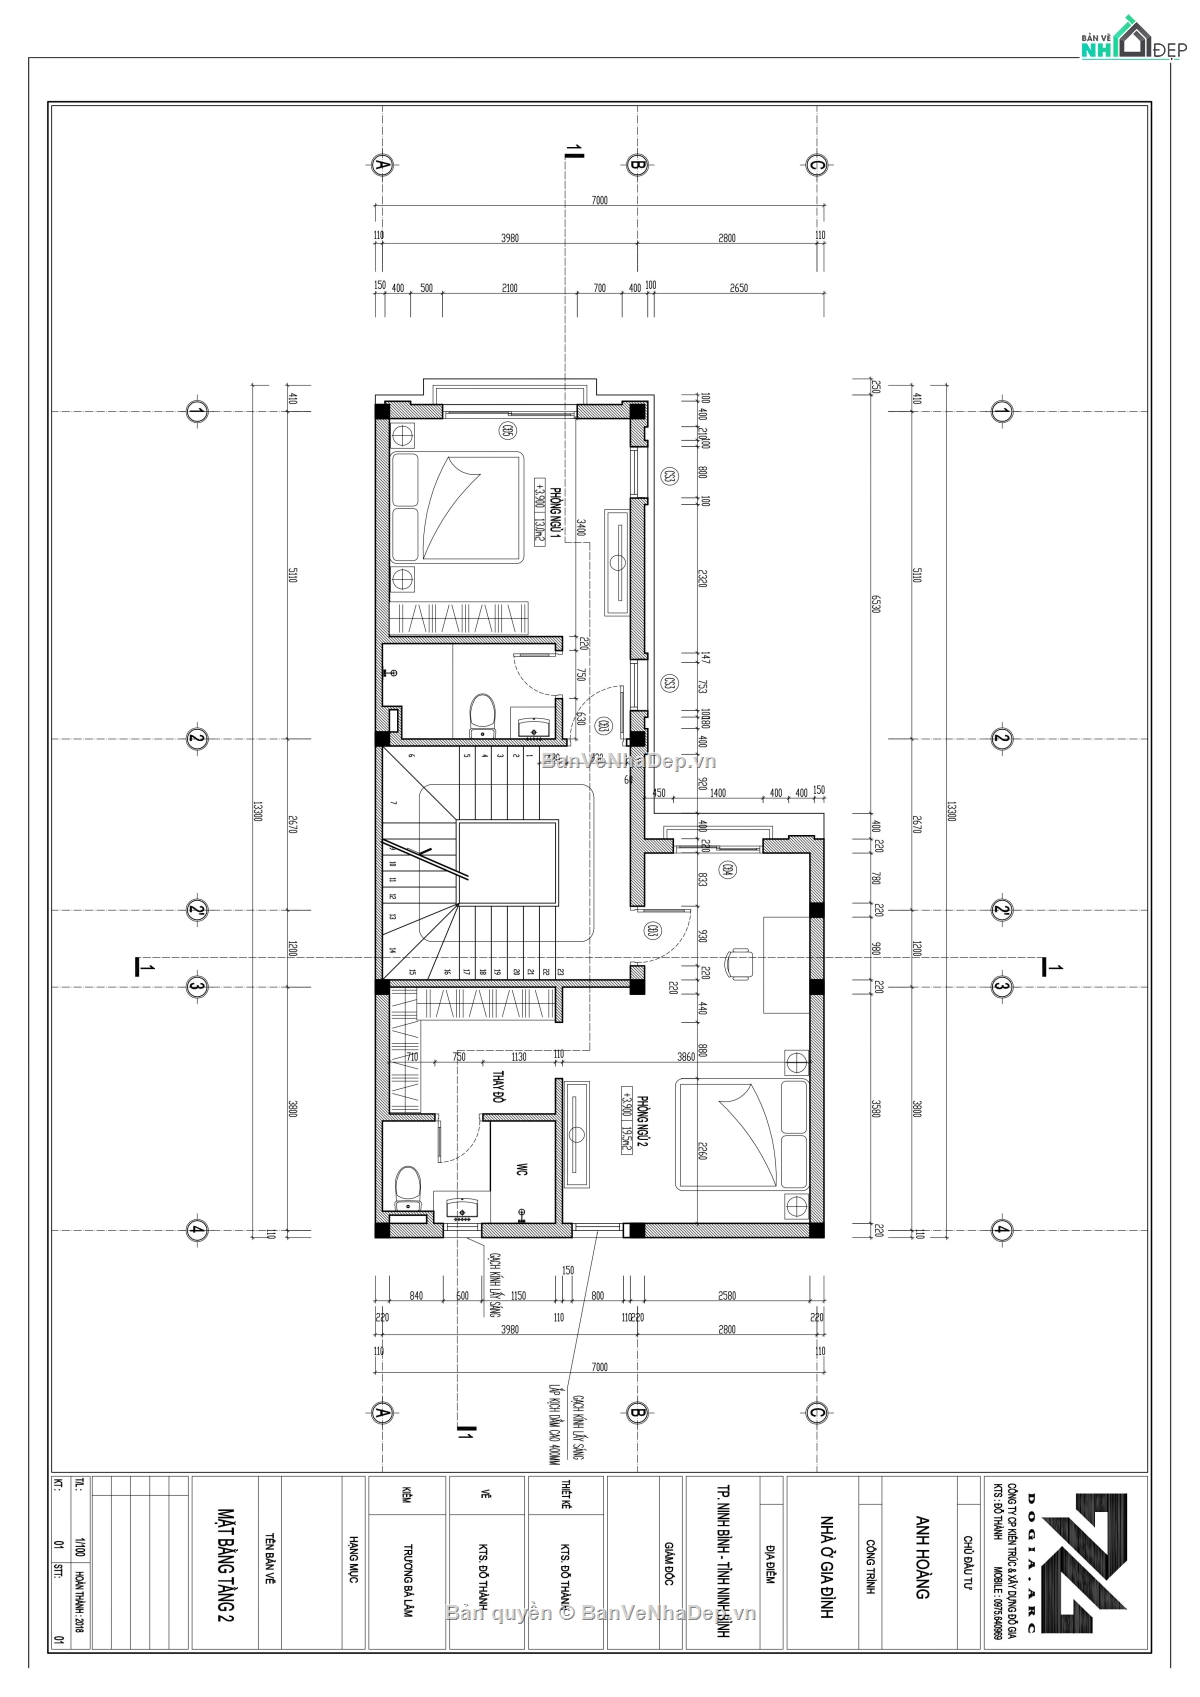 38 bộ bản vẽ AUTOCAD hồ sơ biệt thự 3 tầng hiện đại full kiến trúc, kết cấu, điện nước và phối cảnh [Giảm giá sốc 15%]